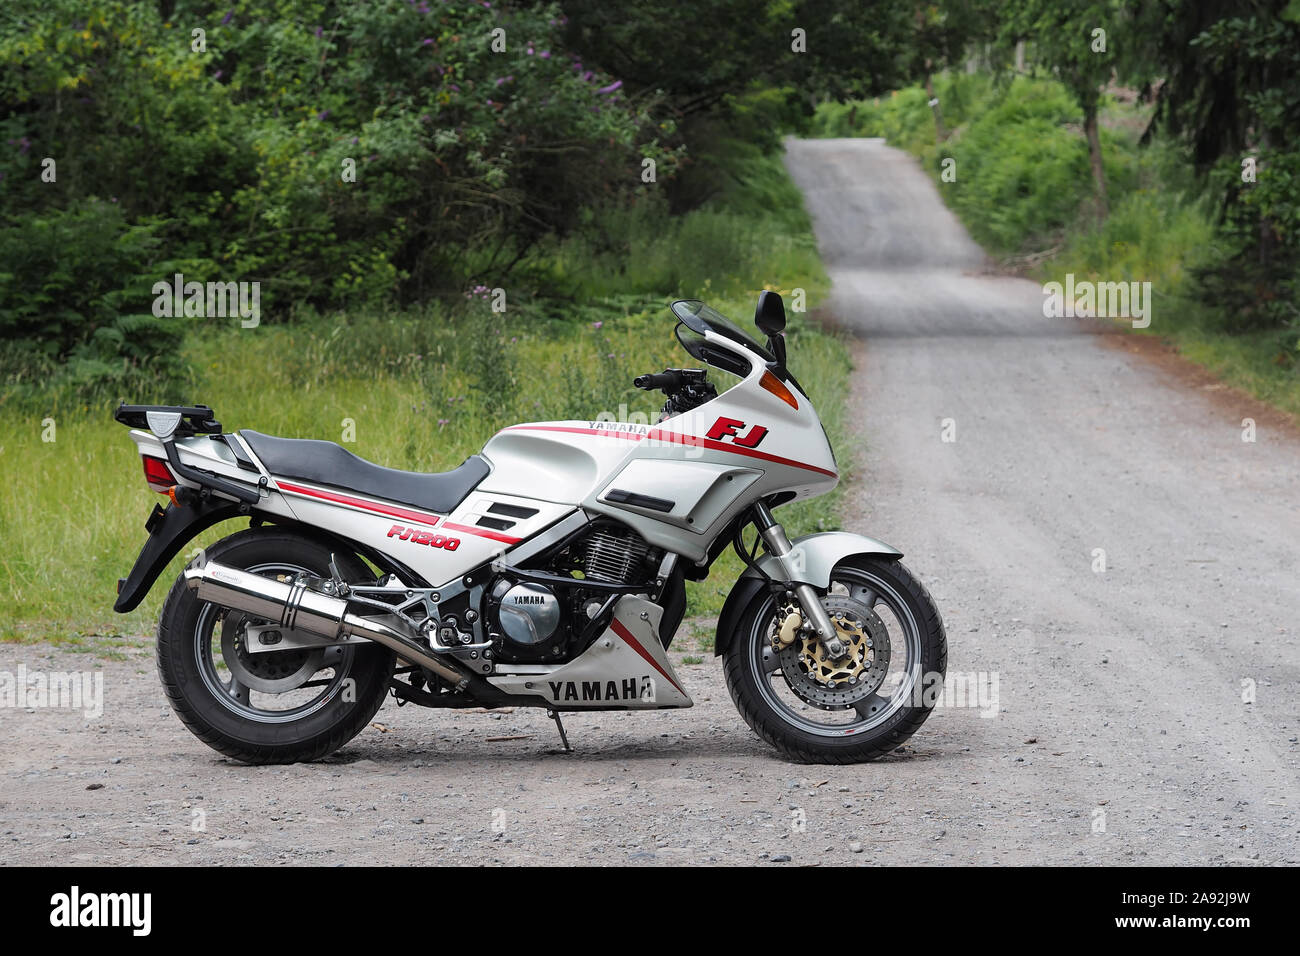 Moto Yamaha FJ1200 stationné sur la route des bois. Tipperary, Irlande Banque D'Images